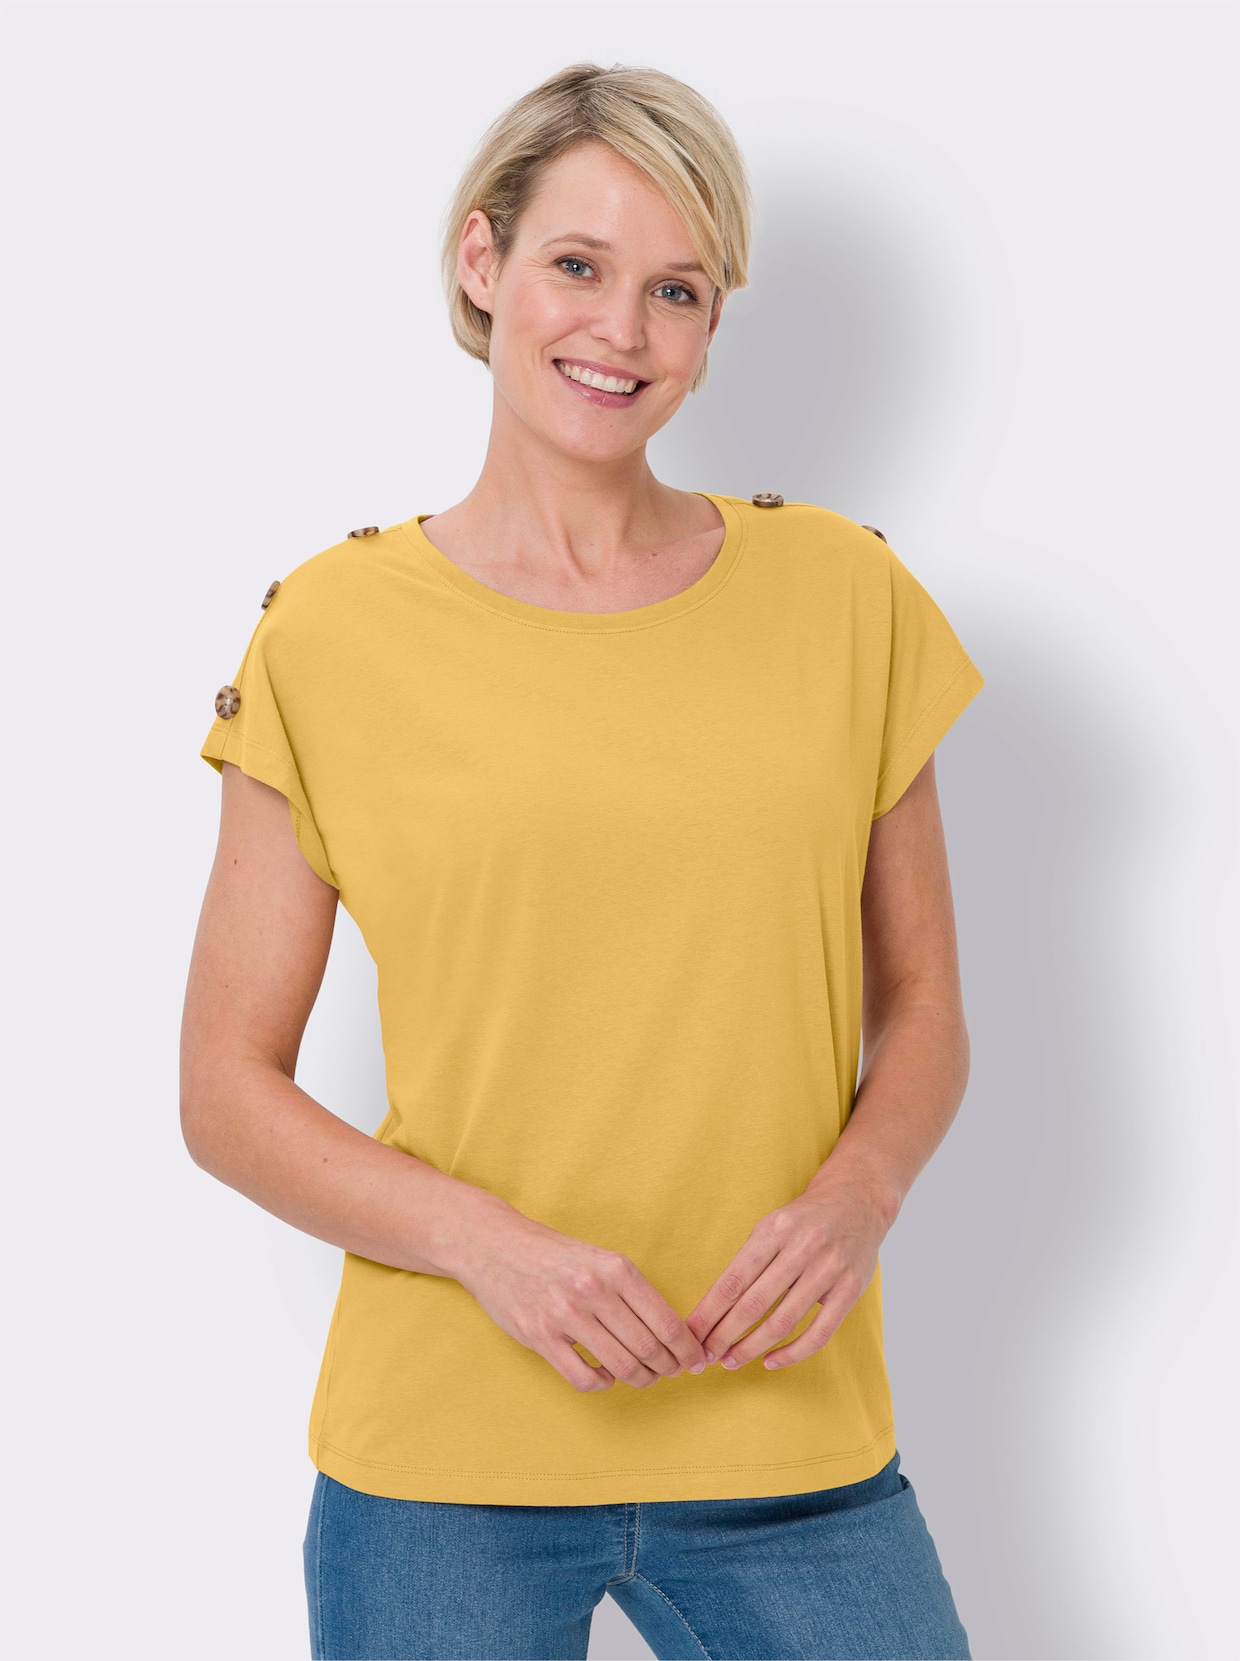 Tričko s krátkým rukávem - žlutá